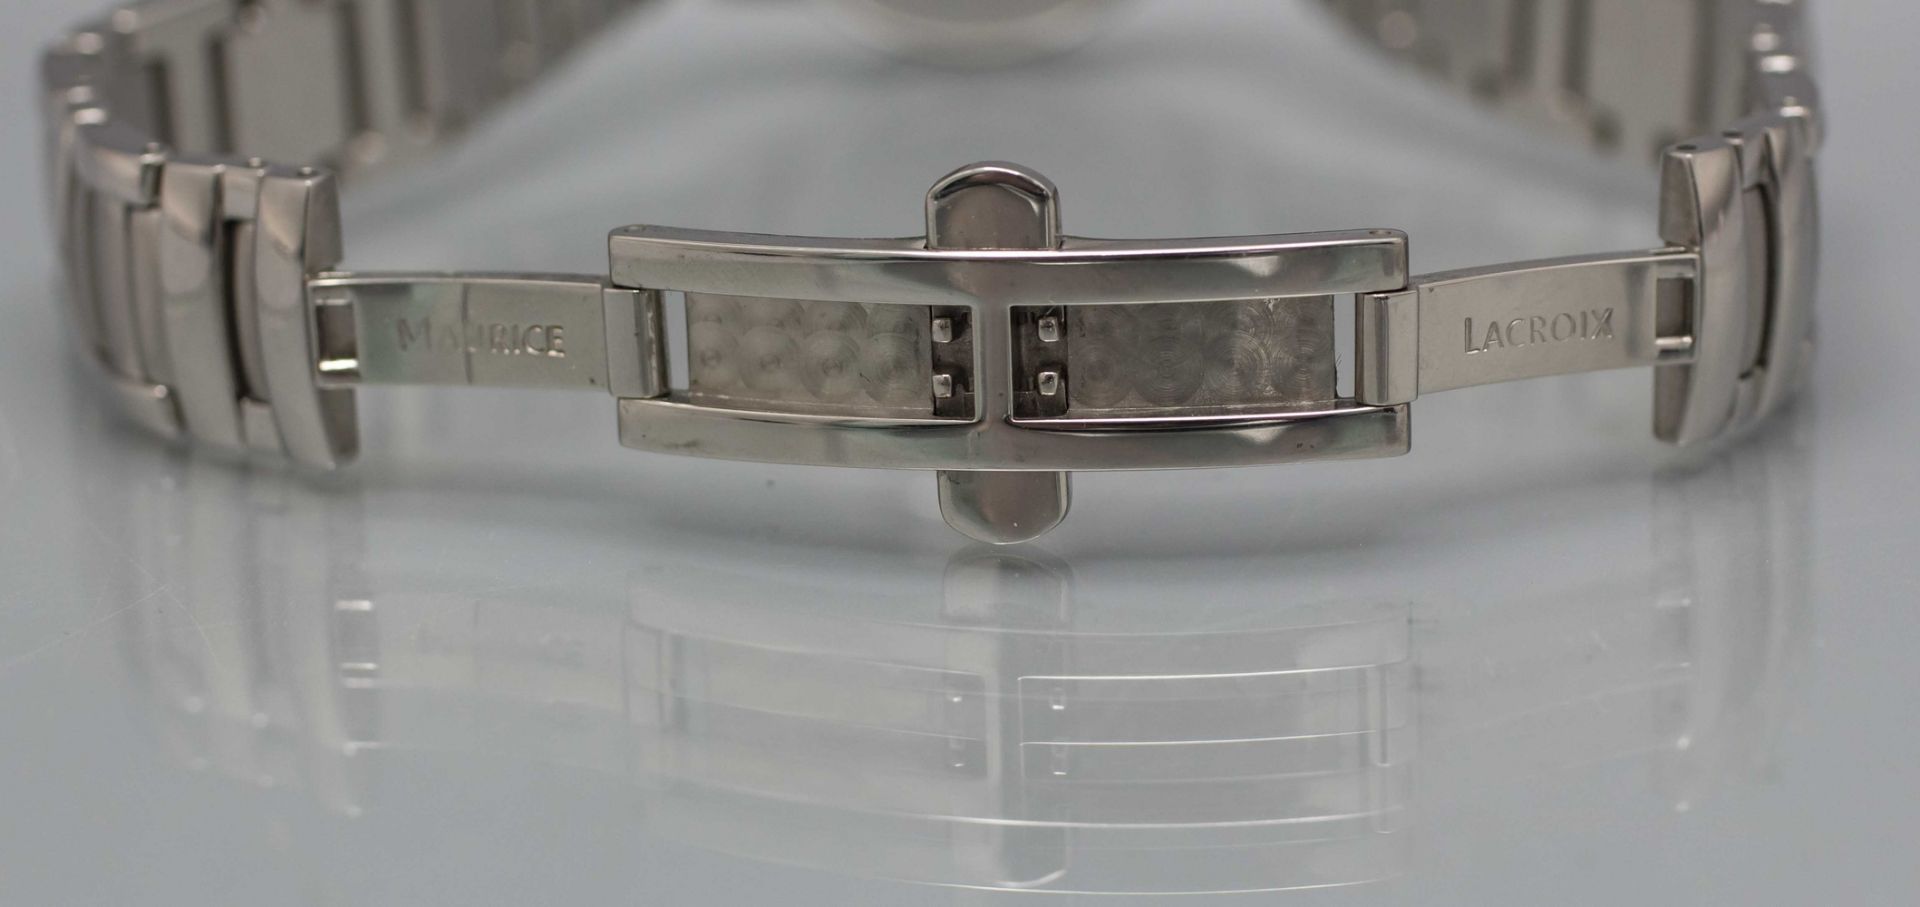 Damenarmbanduhr / A ladies wristwatch, Maurice Lacroix, Switzerland, mit Originalbox - Bild 4 aus 6